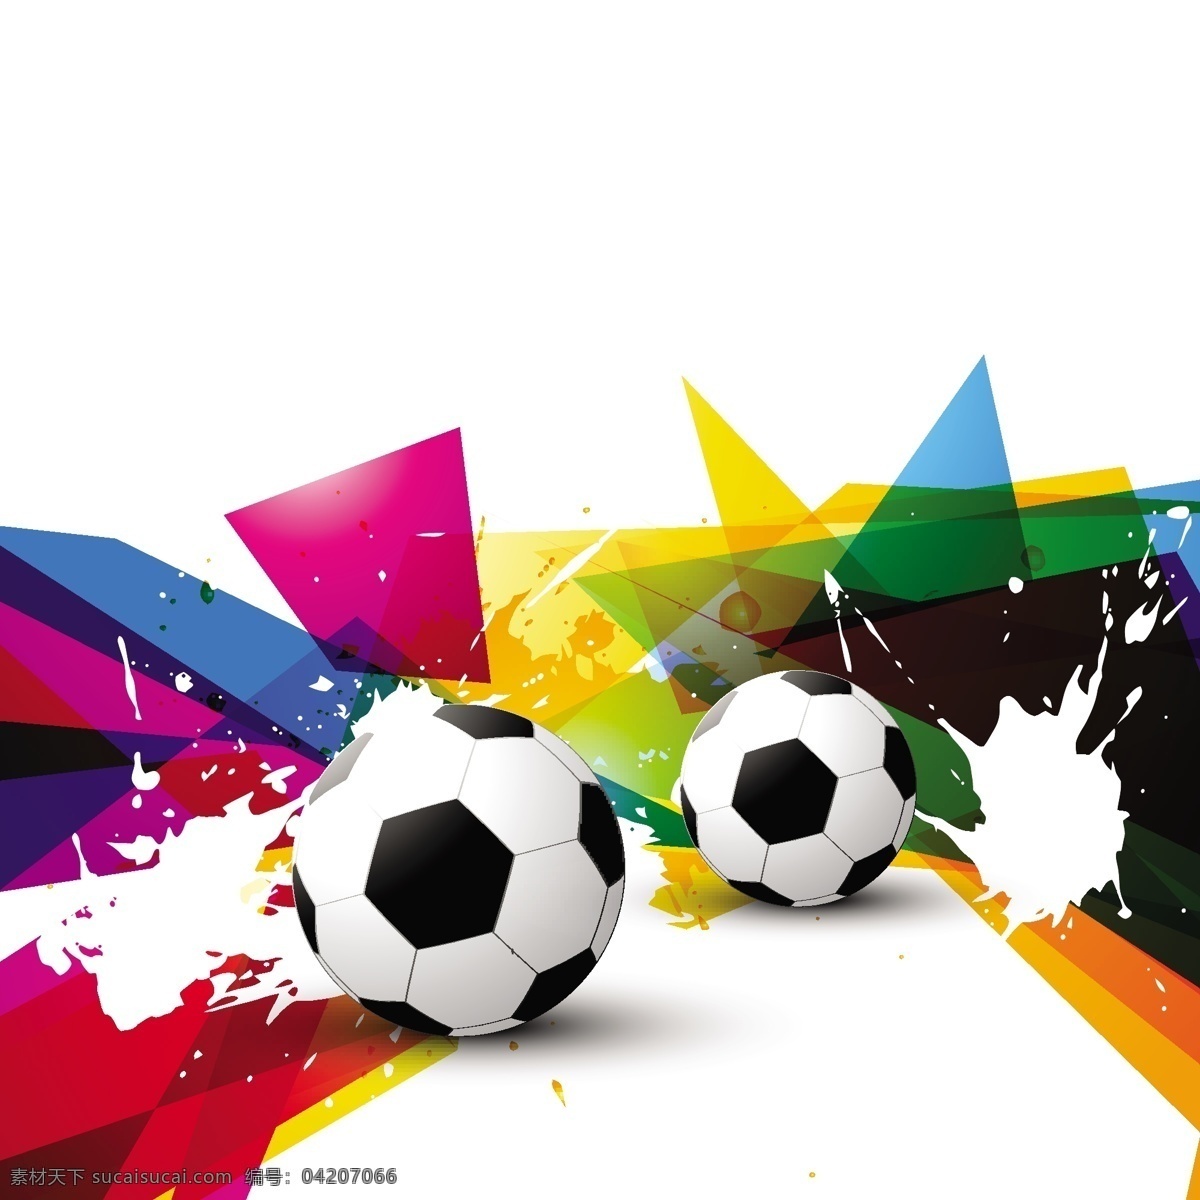 彩色 墨迹 喷溅 足球 世界杯 墨迹喷溅 体育运动 生活百科 矢量素材 白色